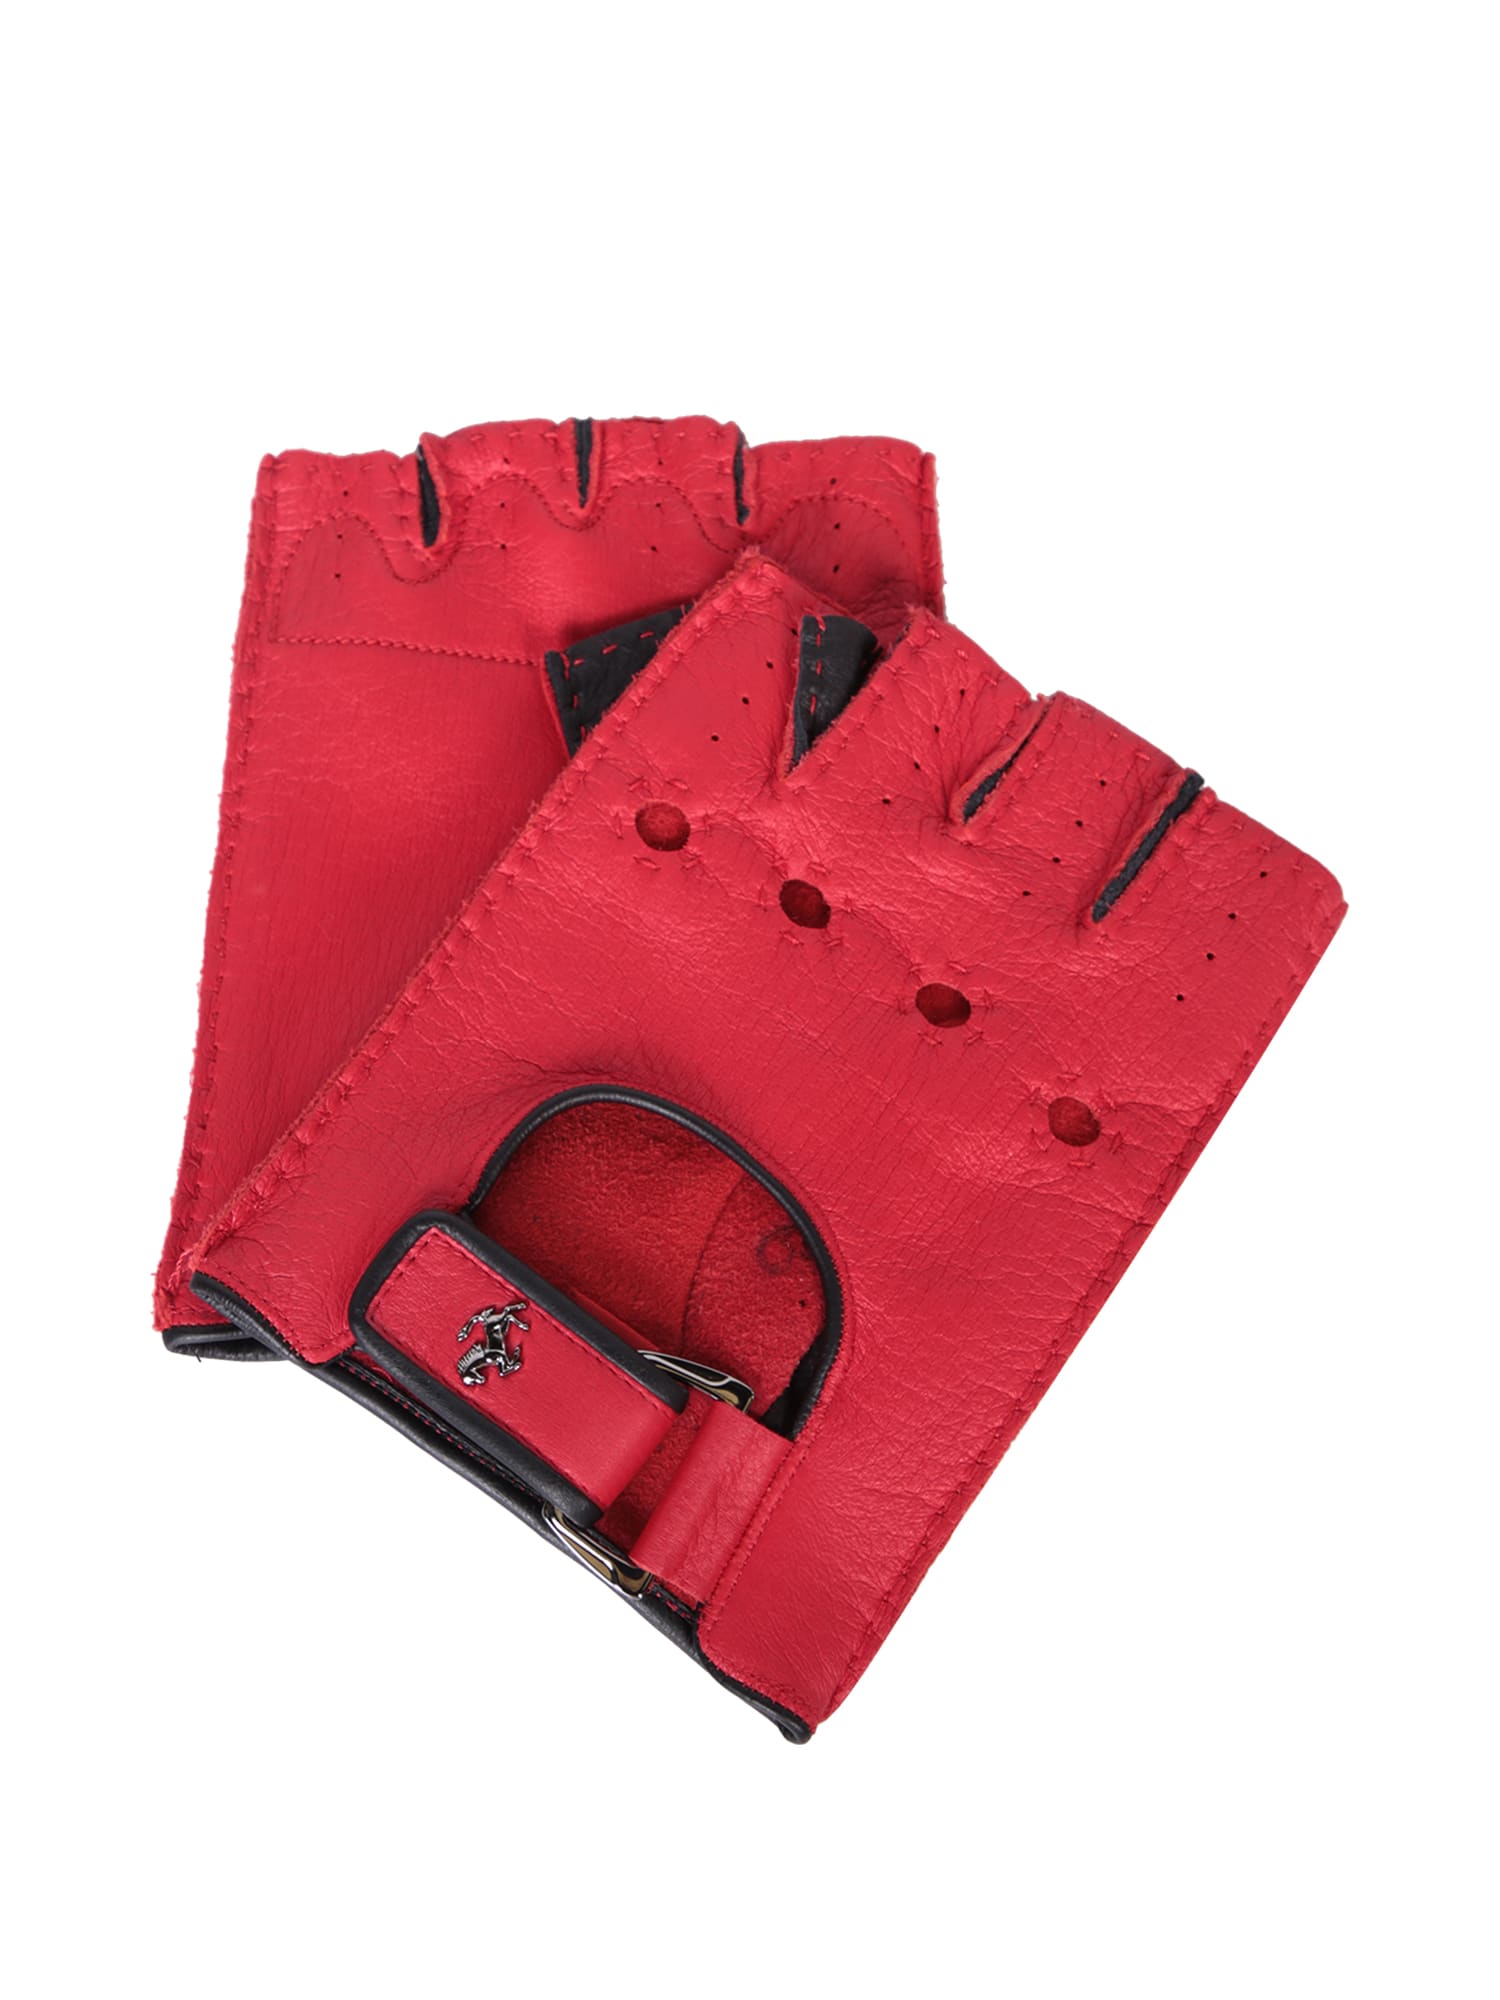 Ferrari Red Leather Fingerless Gloves